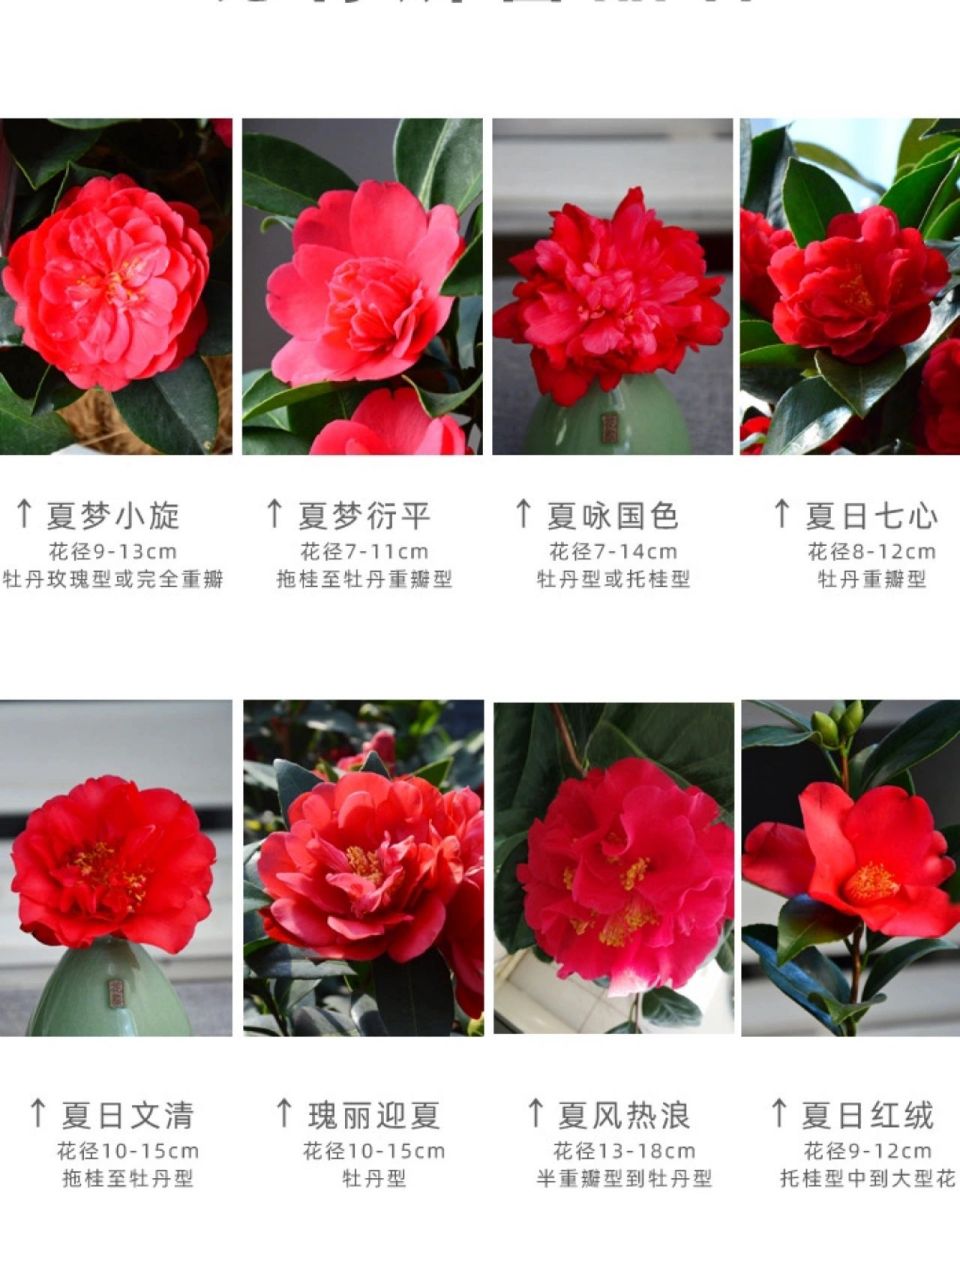 山茶花花序类型图片